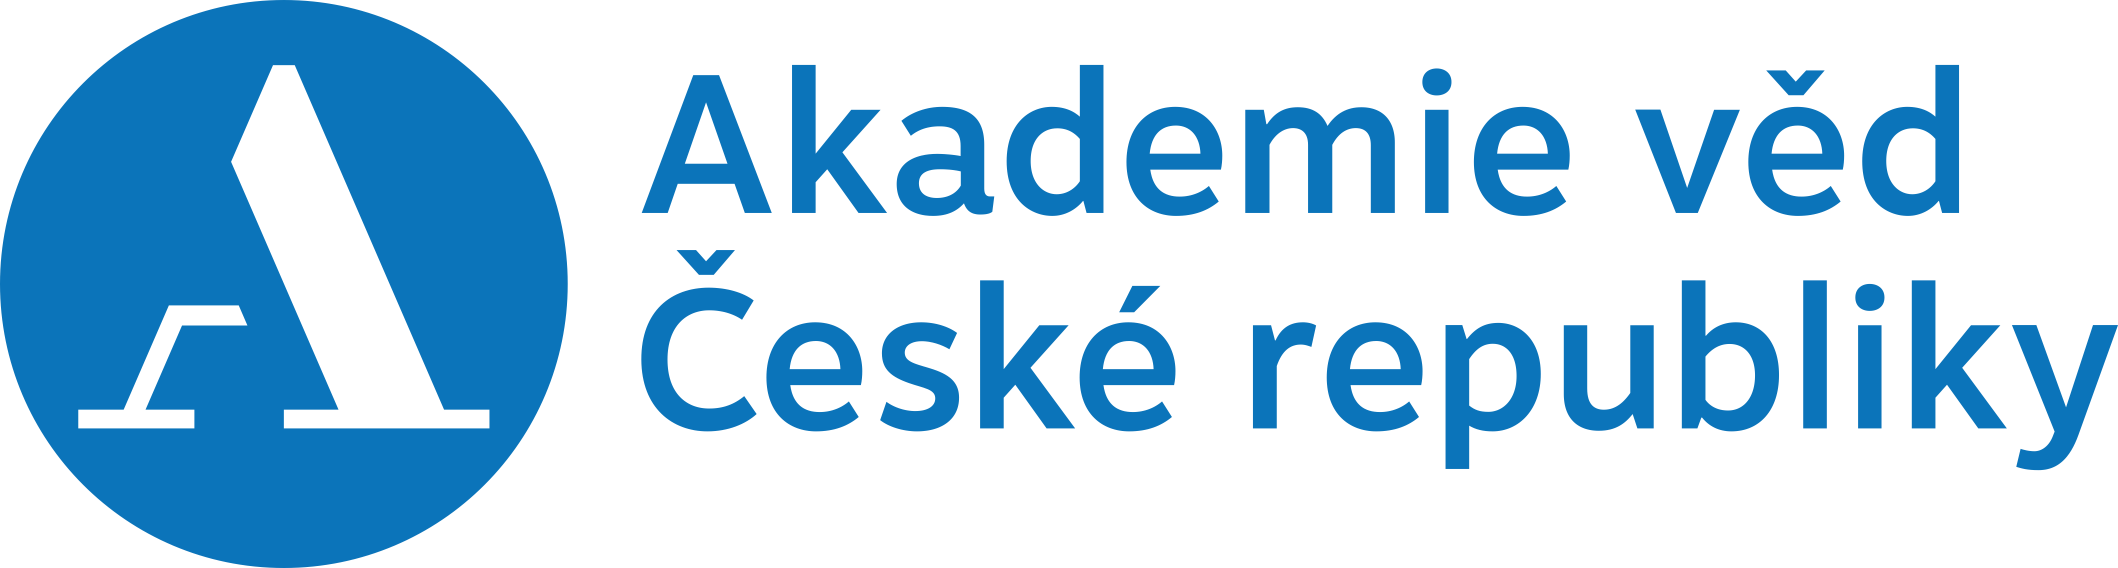 Akademie věd České republiky